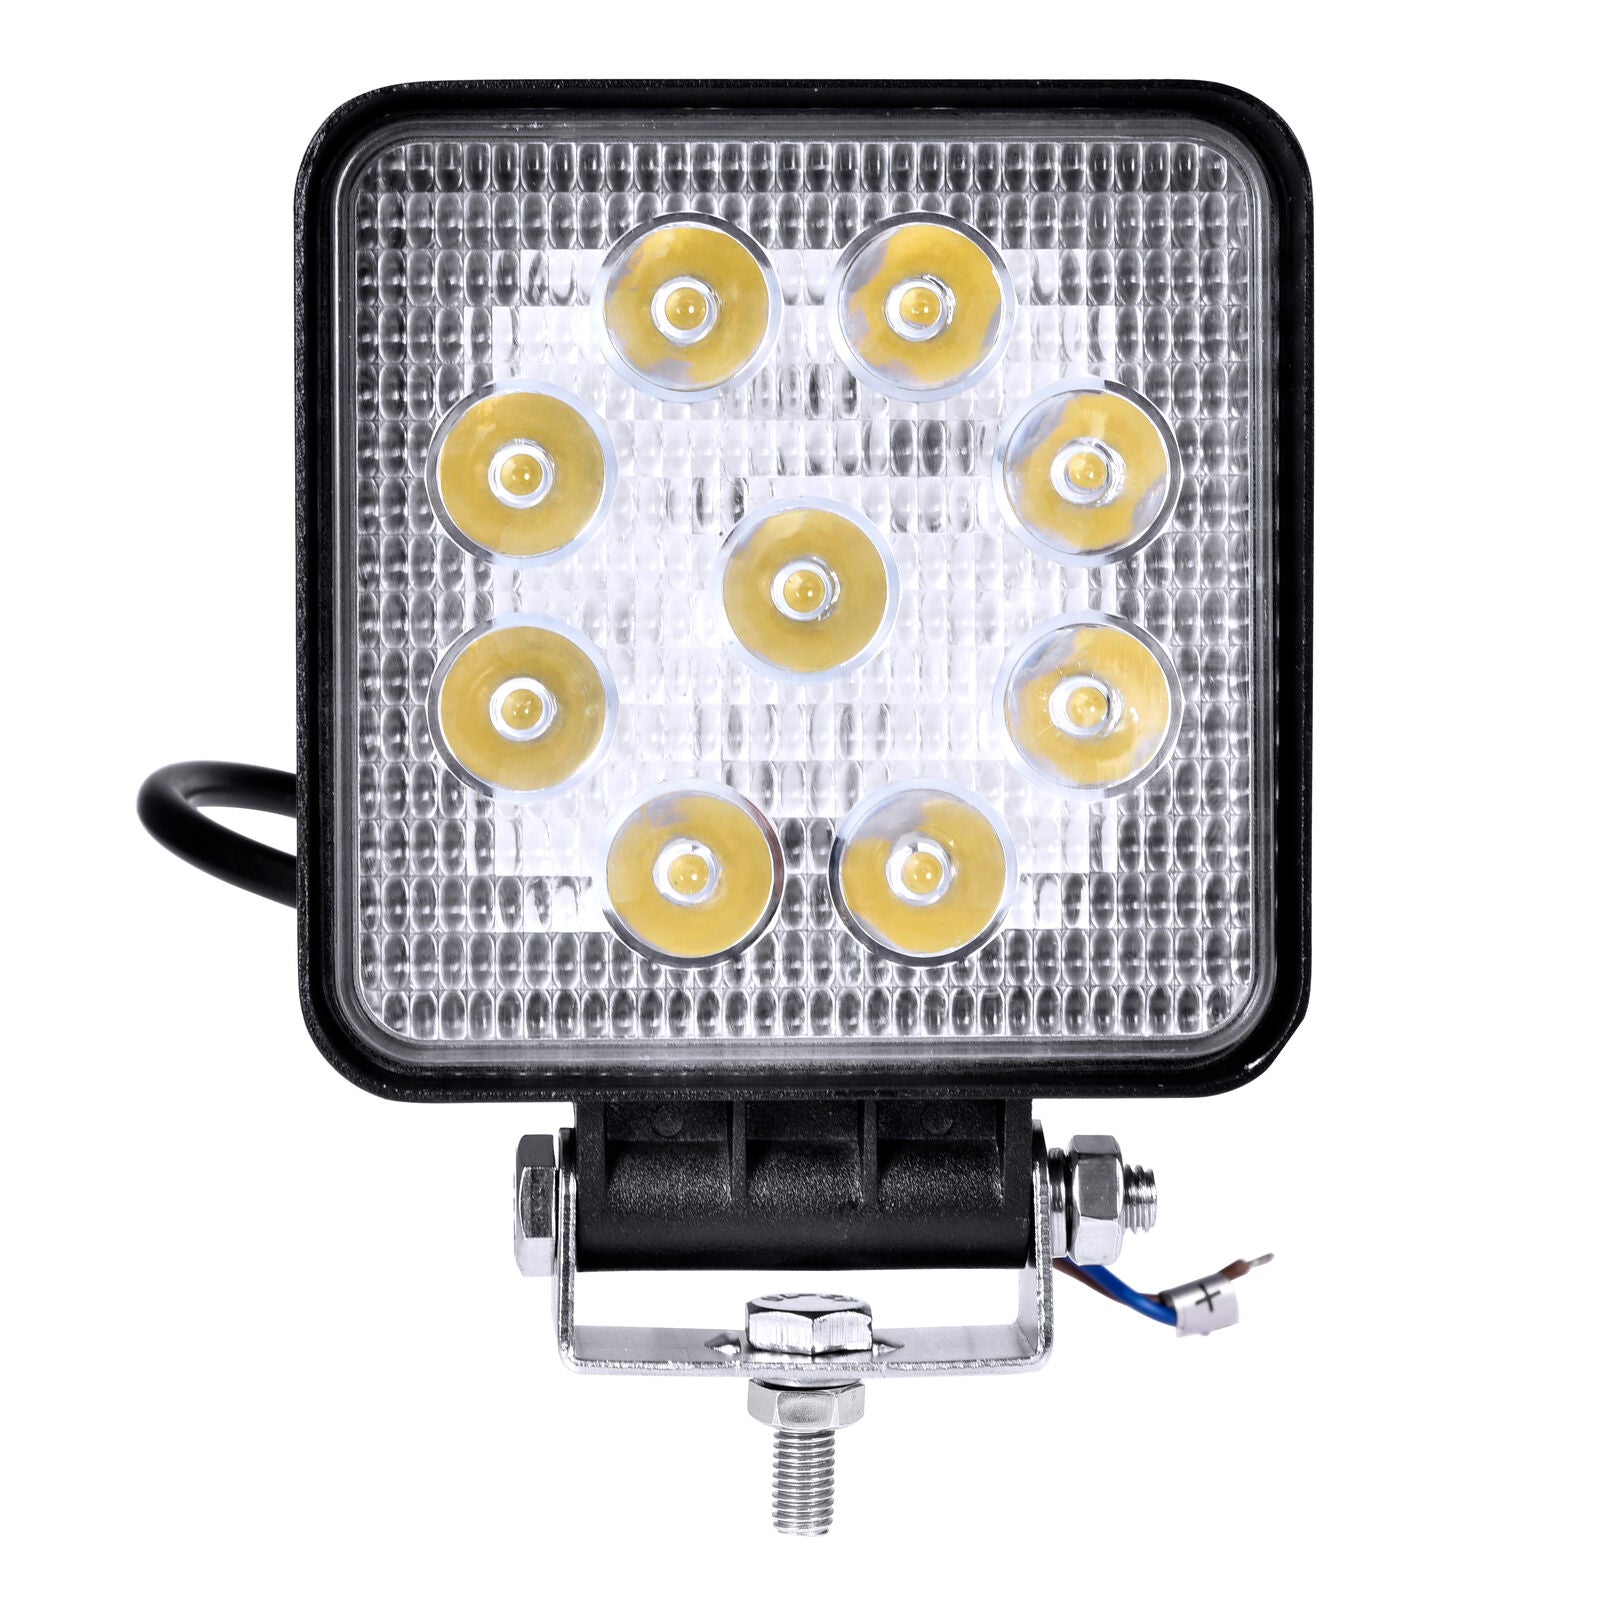 Billede af UDSALG - LED køretøjs projektør 27 watt 12/24 volt - Square, SUPER SLIM - Dinled - Køretøjs projektører